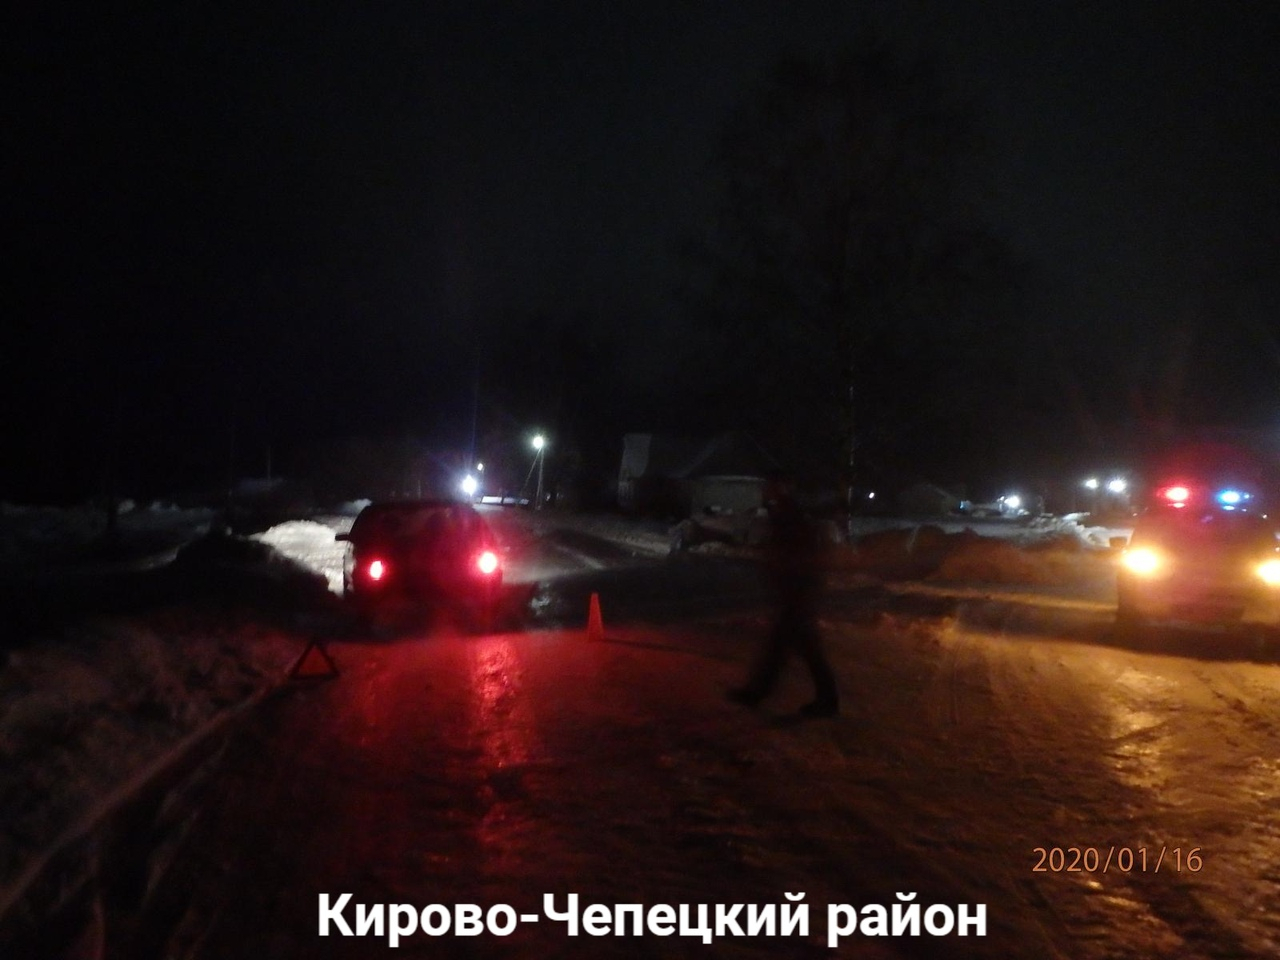 В Кирово-Чепецком районе пенсионерка попала под колеса автомобиля